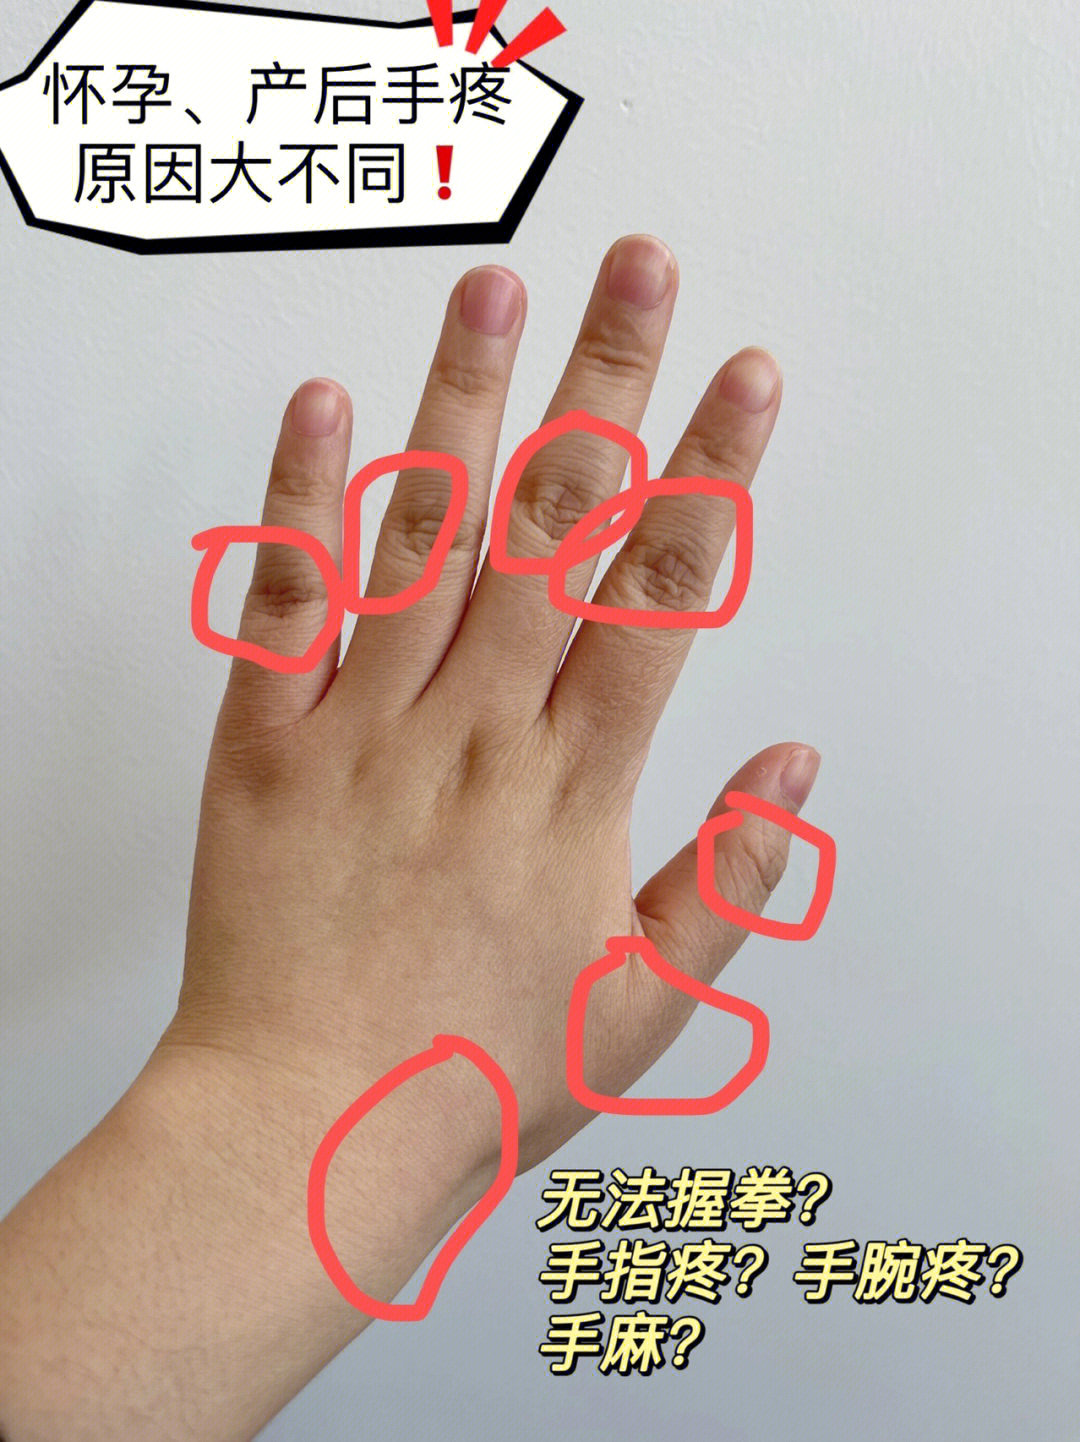 9799主要症状:手腕痛,手指手掌麻木,手指关节痛等